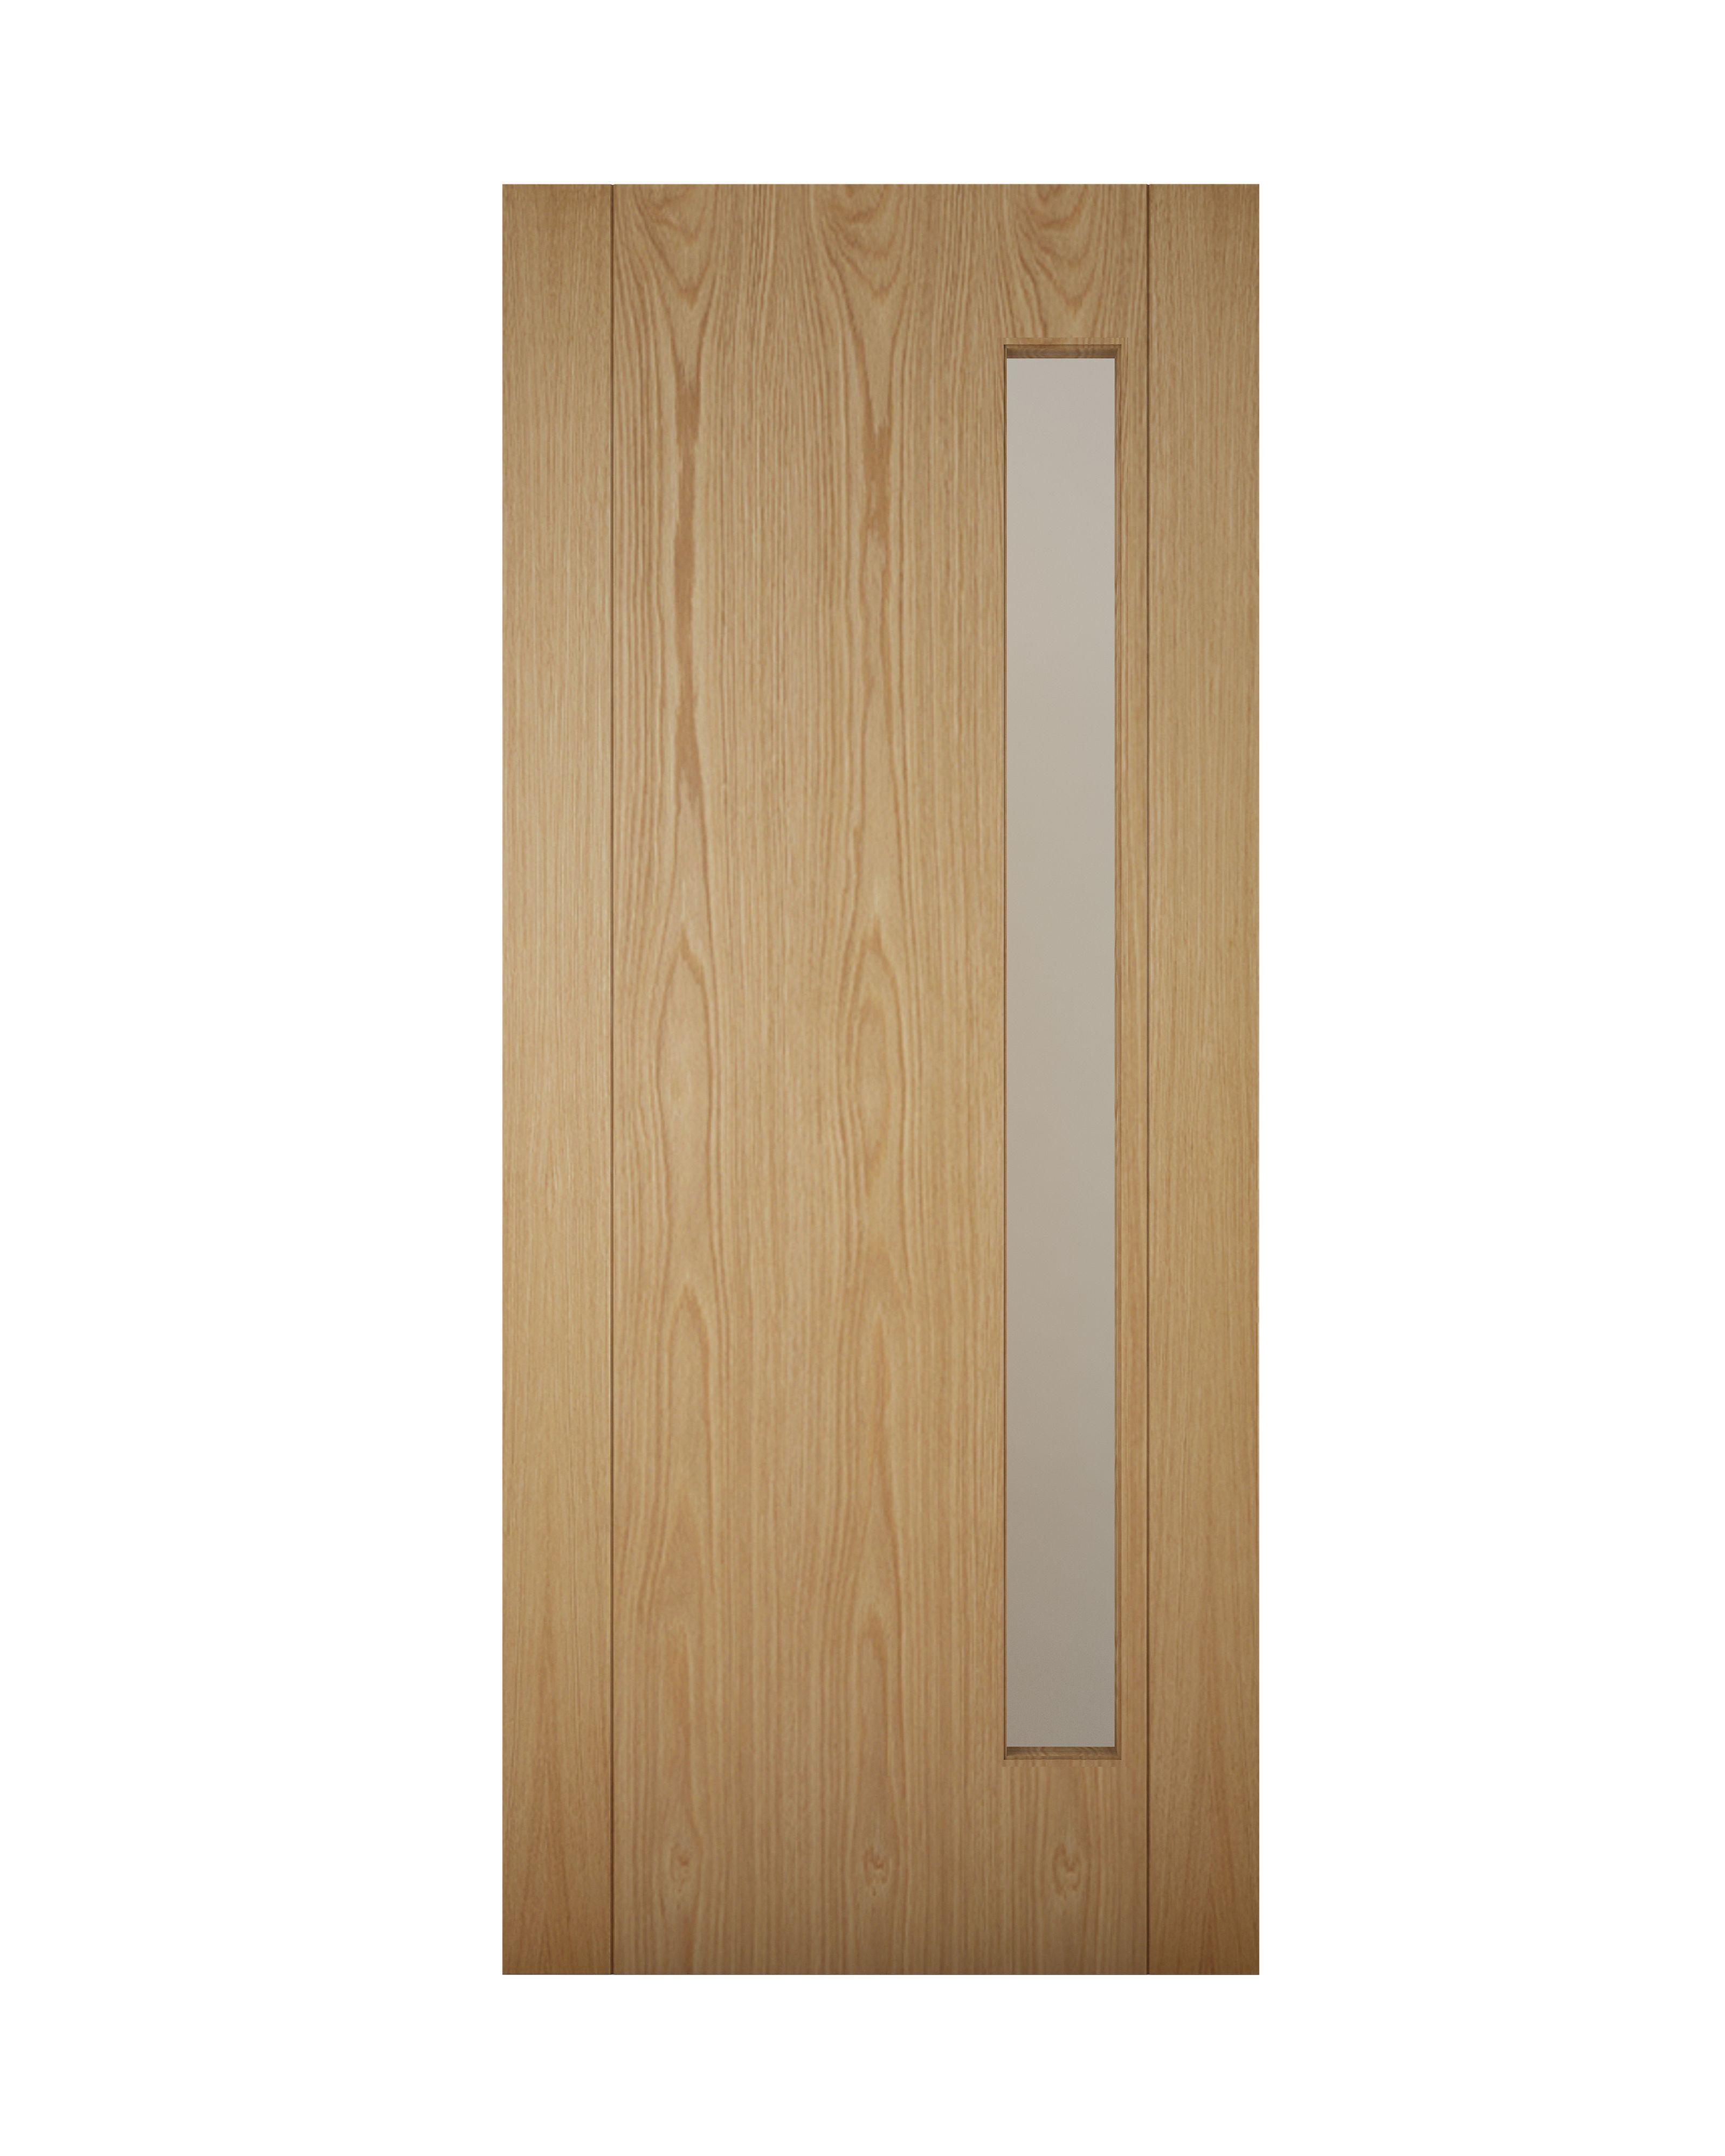 Glazed White oak veneer Left & RHed Front Door set & letter plate, (H)2074mm (W)856mm